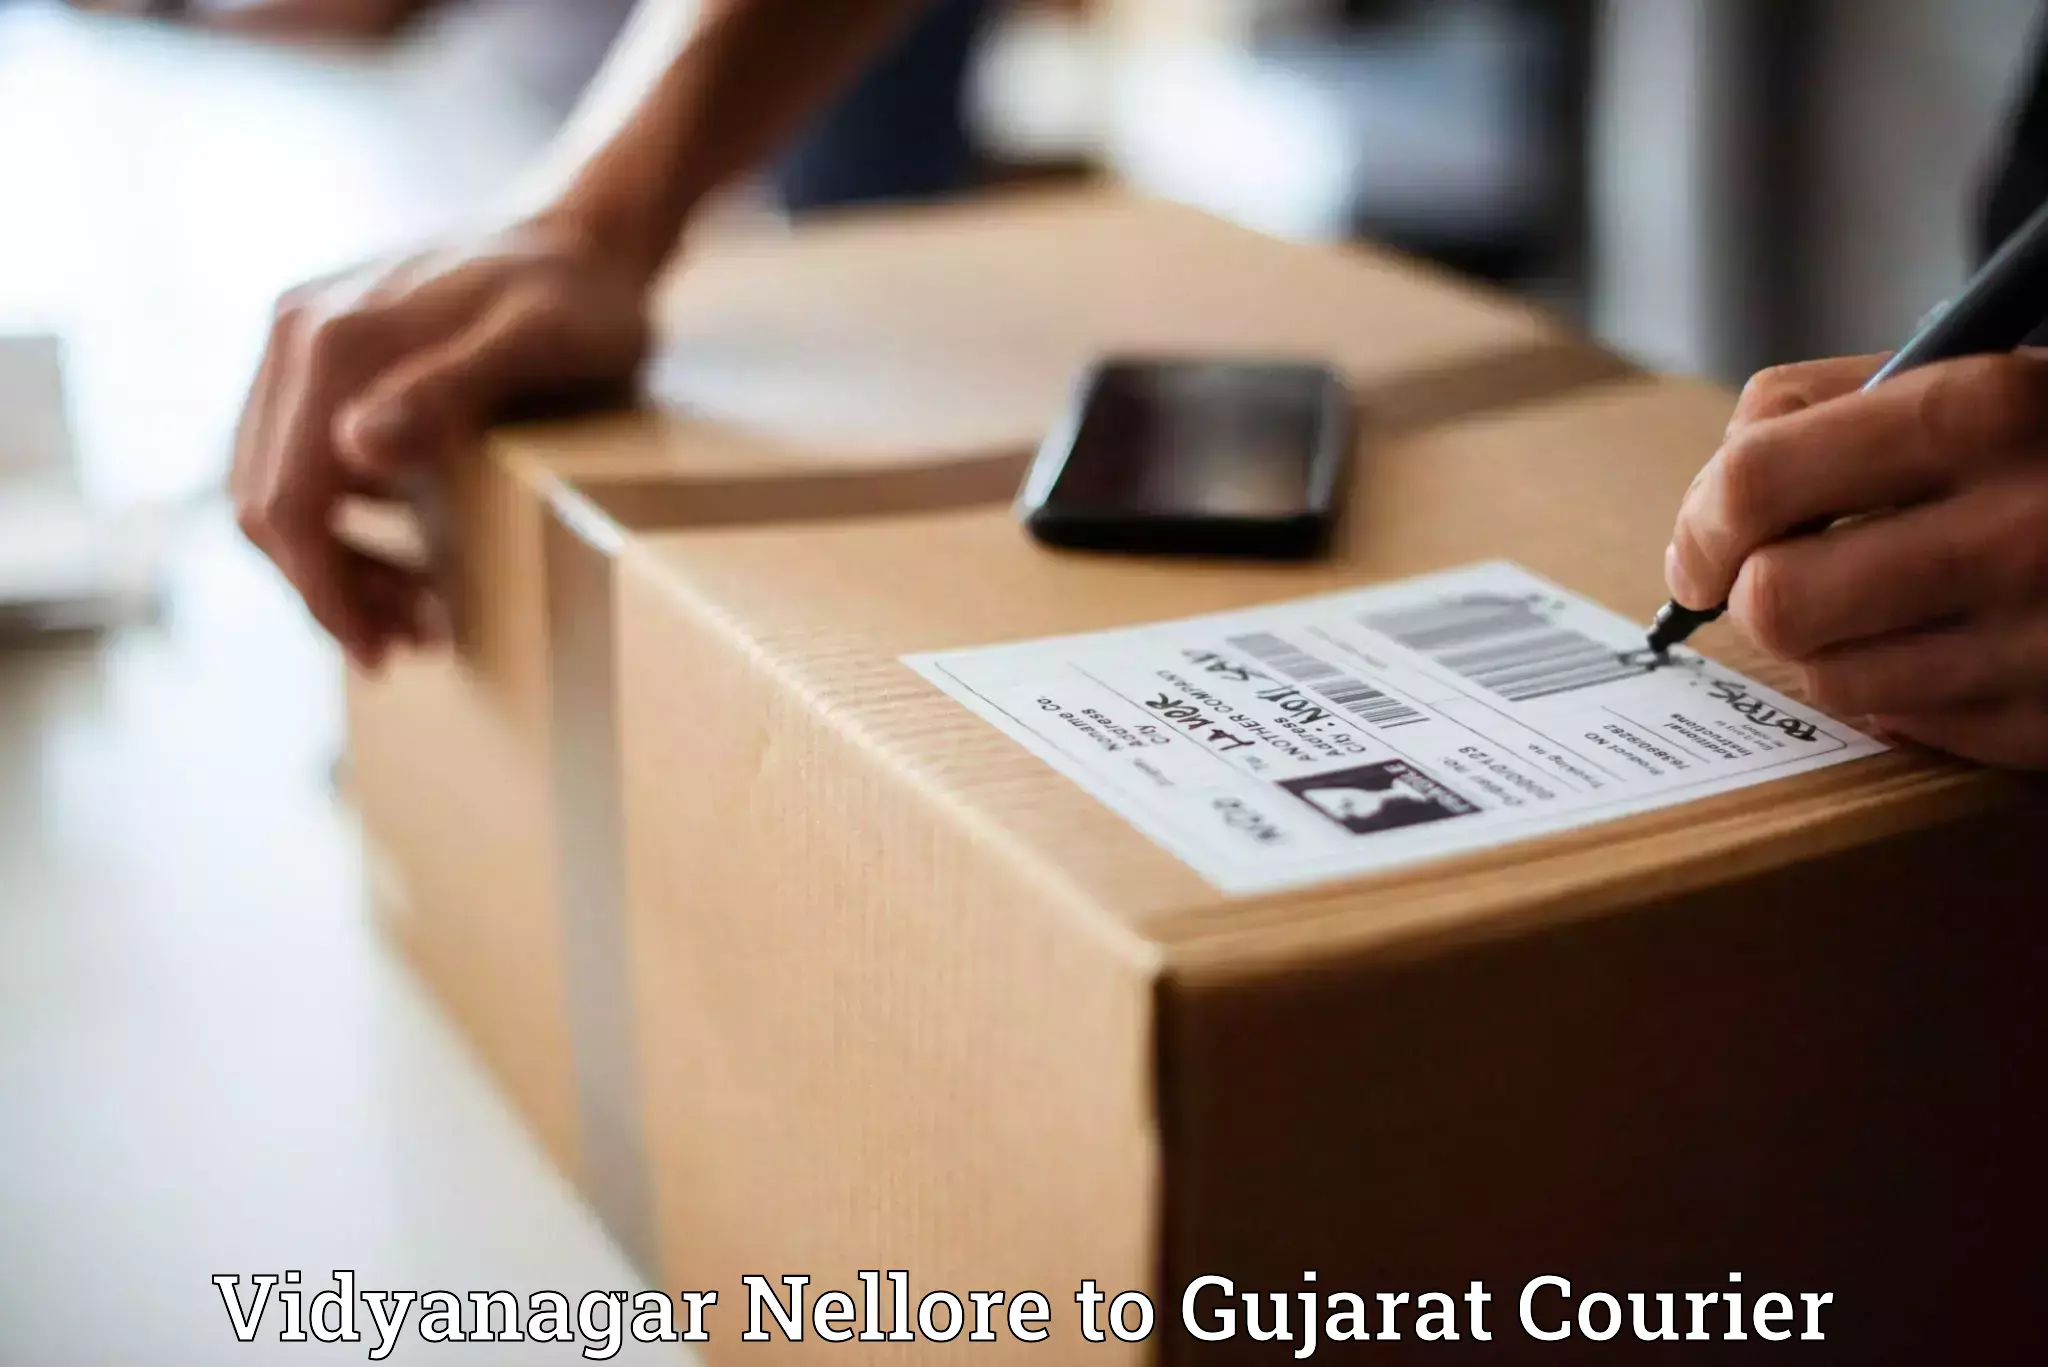 Scalable shipping solutions Vidyanagar Nellore to Visavadar